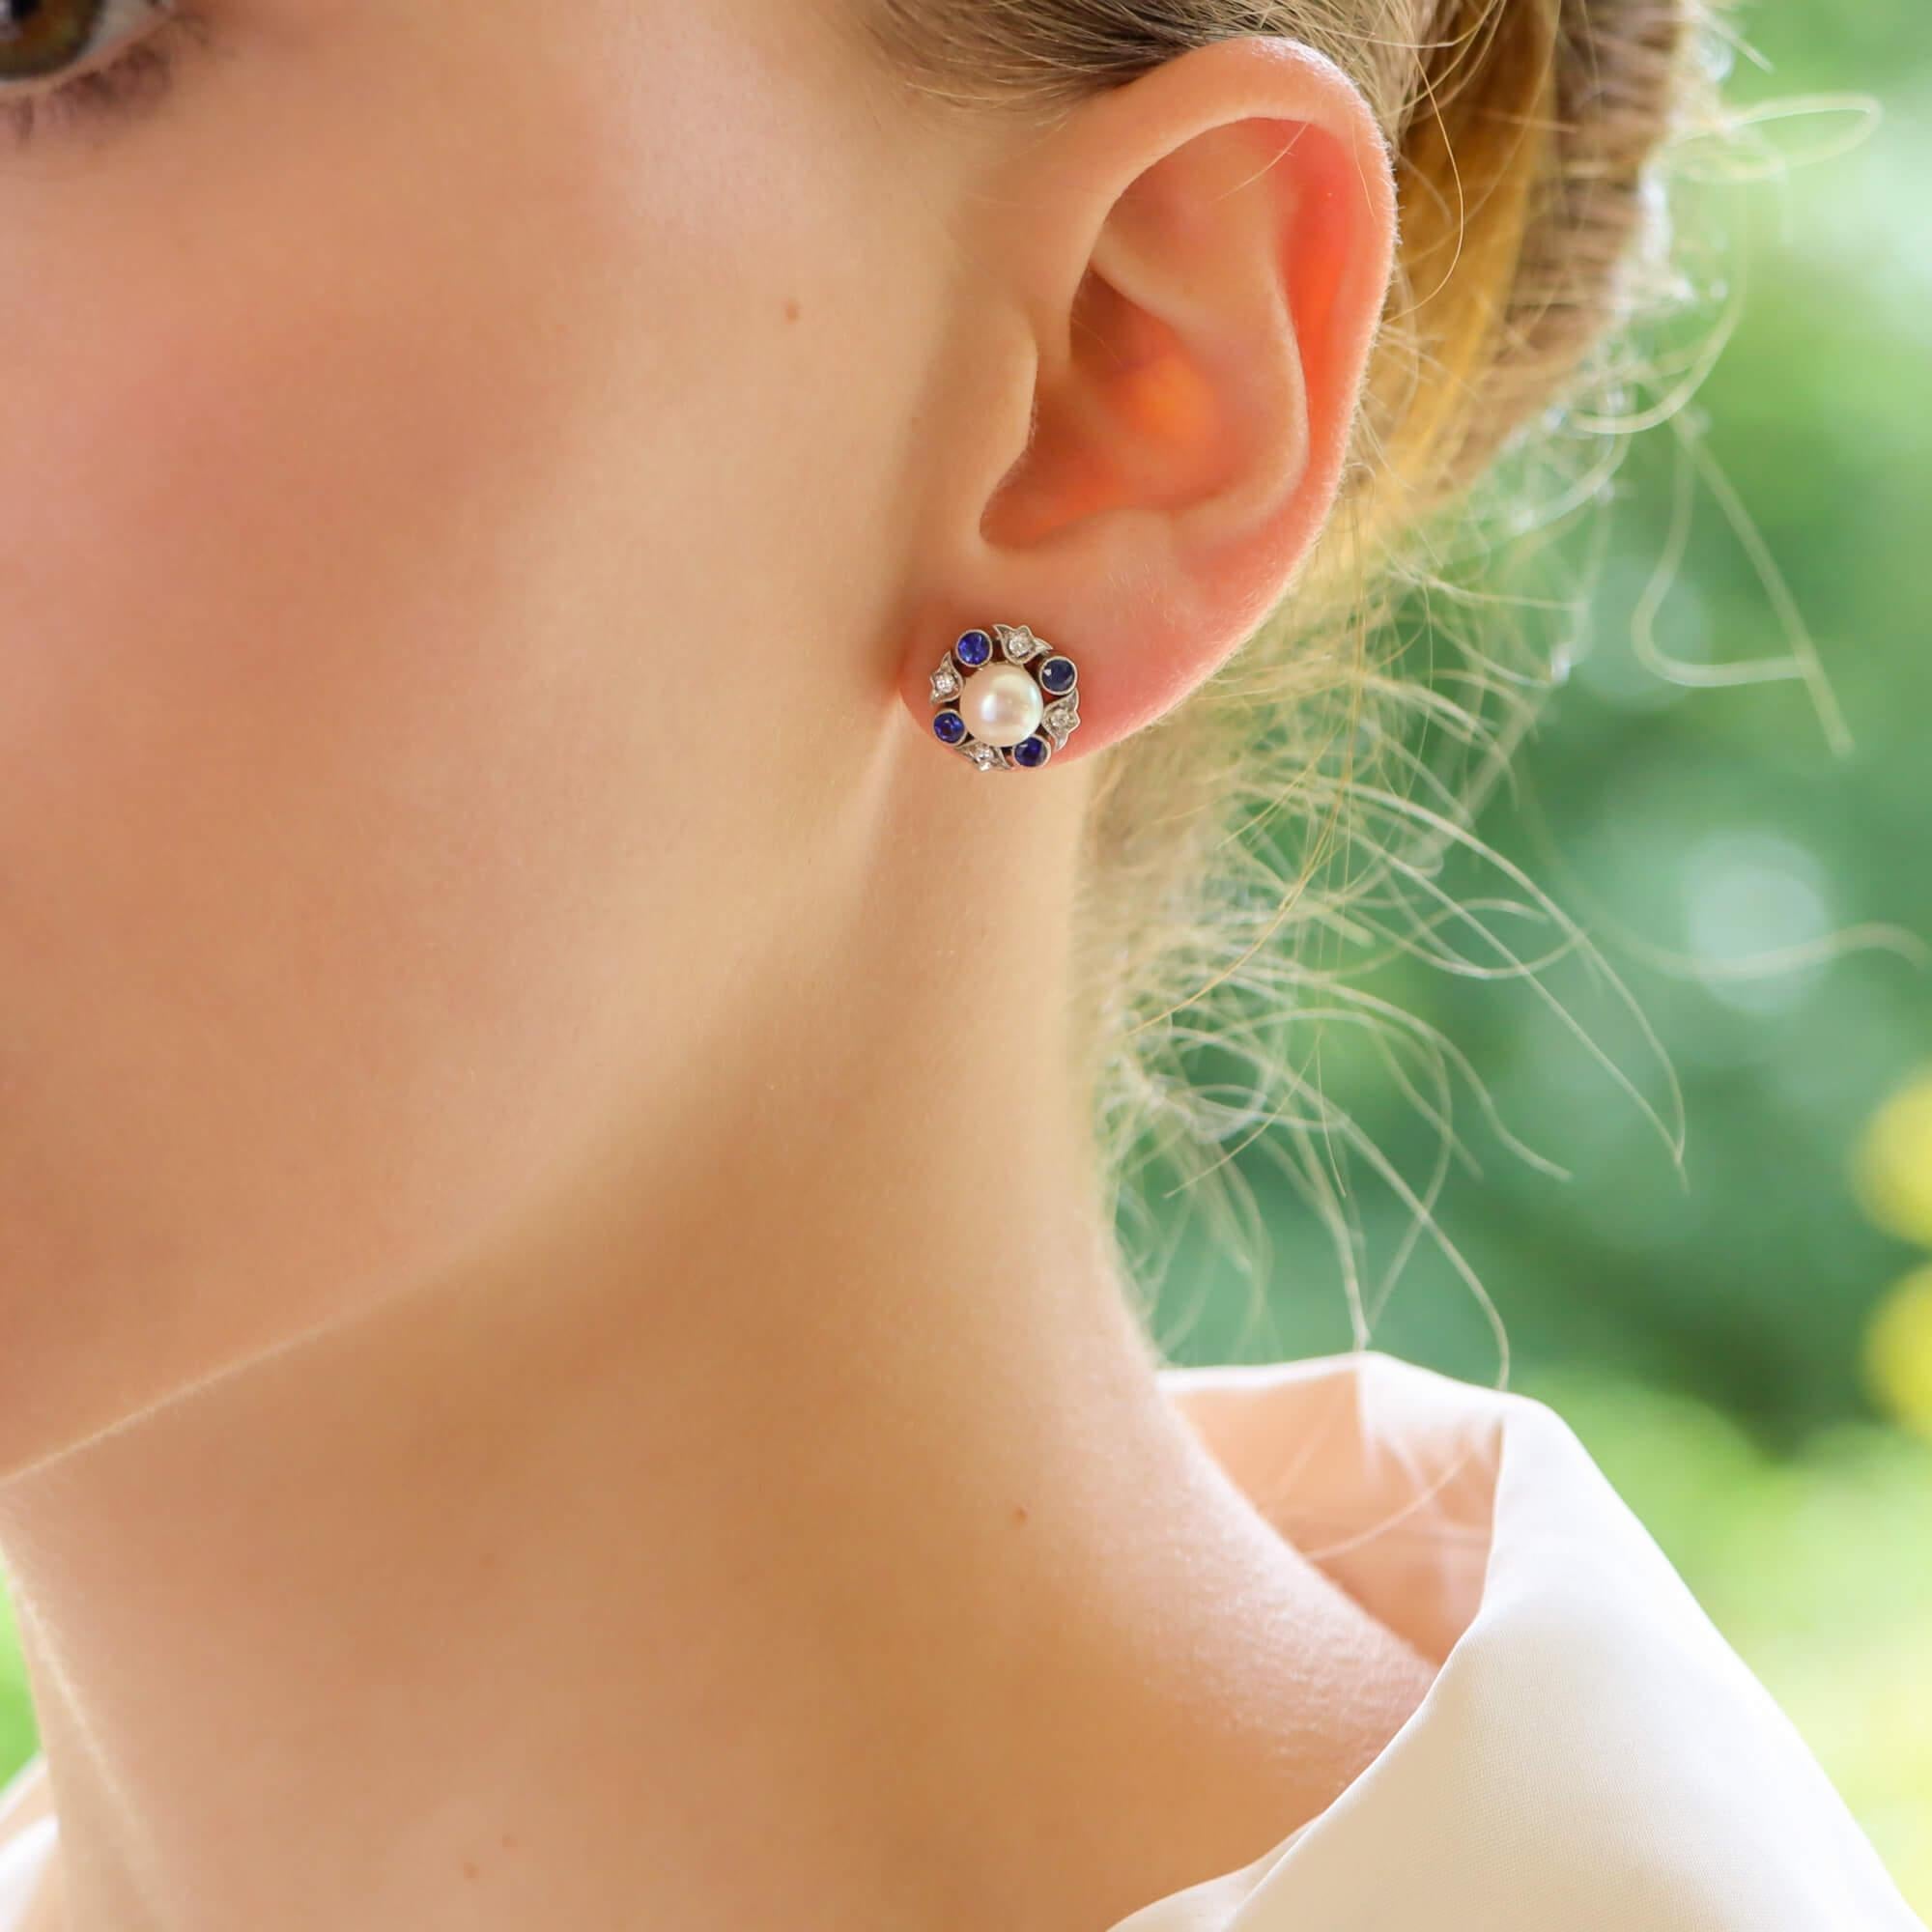 Une paire de boucles d'oreilles extrêmement élégante en or blanc 18 carats, composée de perles, de diamants et de saphirs bleus.

Au centre de chaque boucle d'oreille se trouve une perle de culture blanche et brillante, entourée d'un halo abstrait